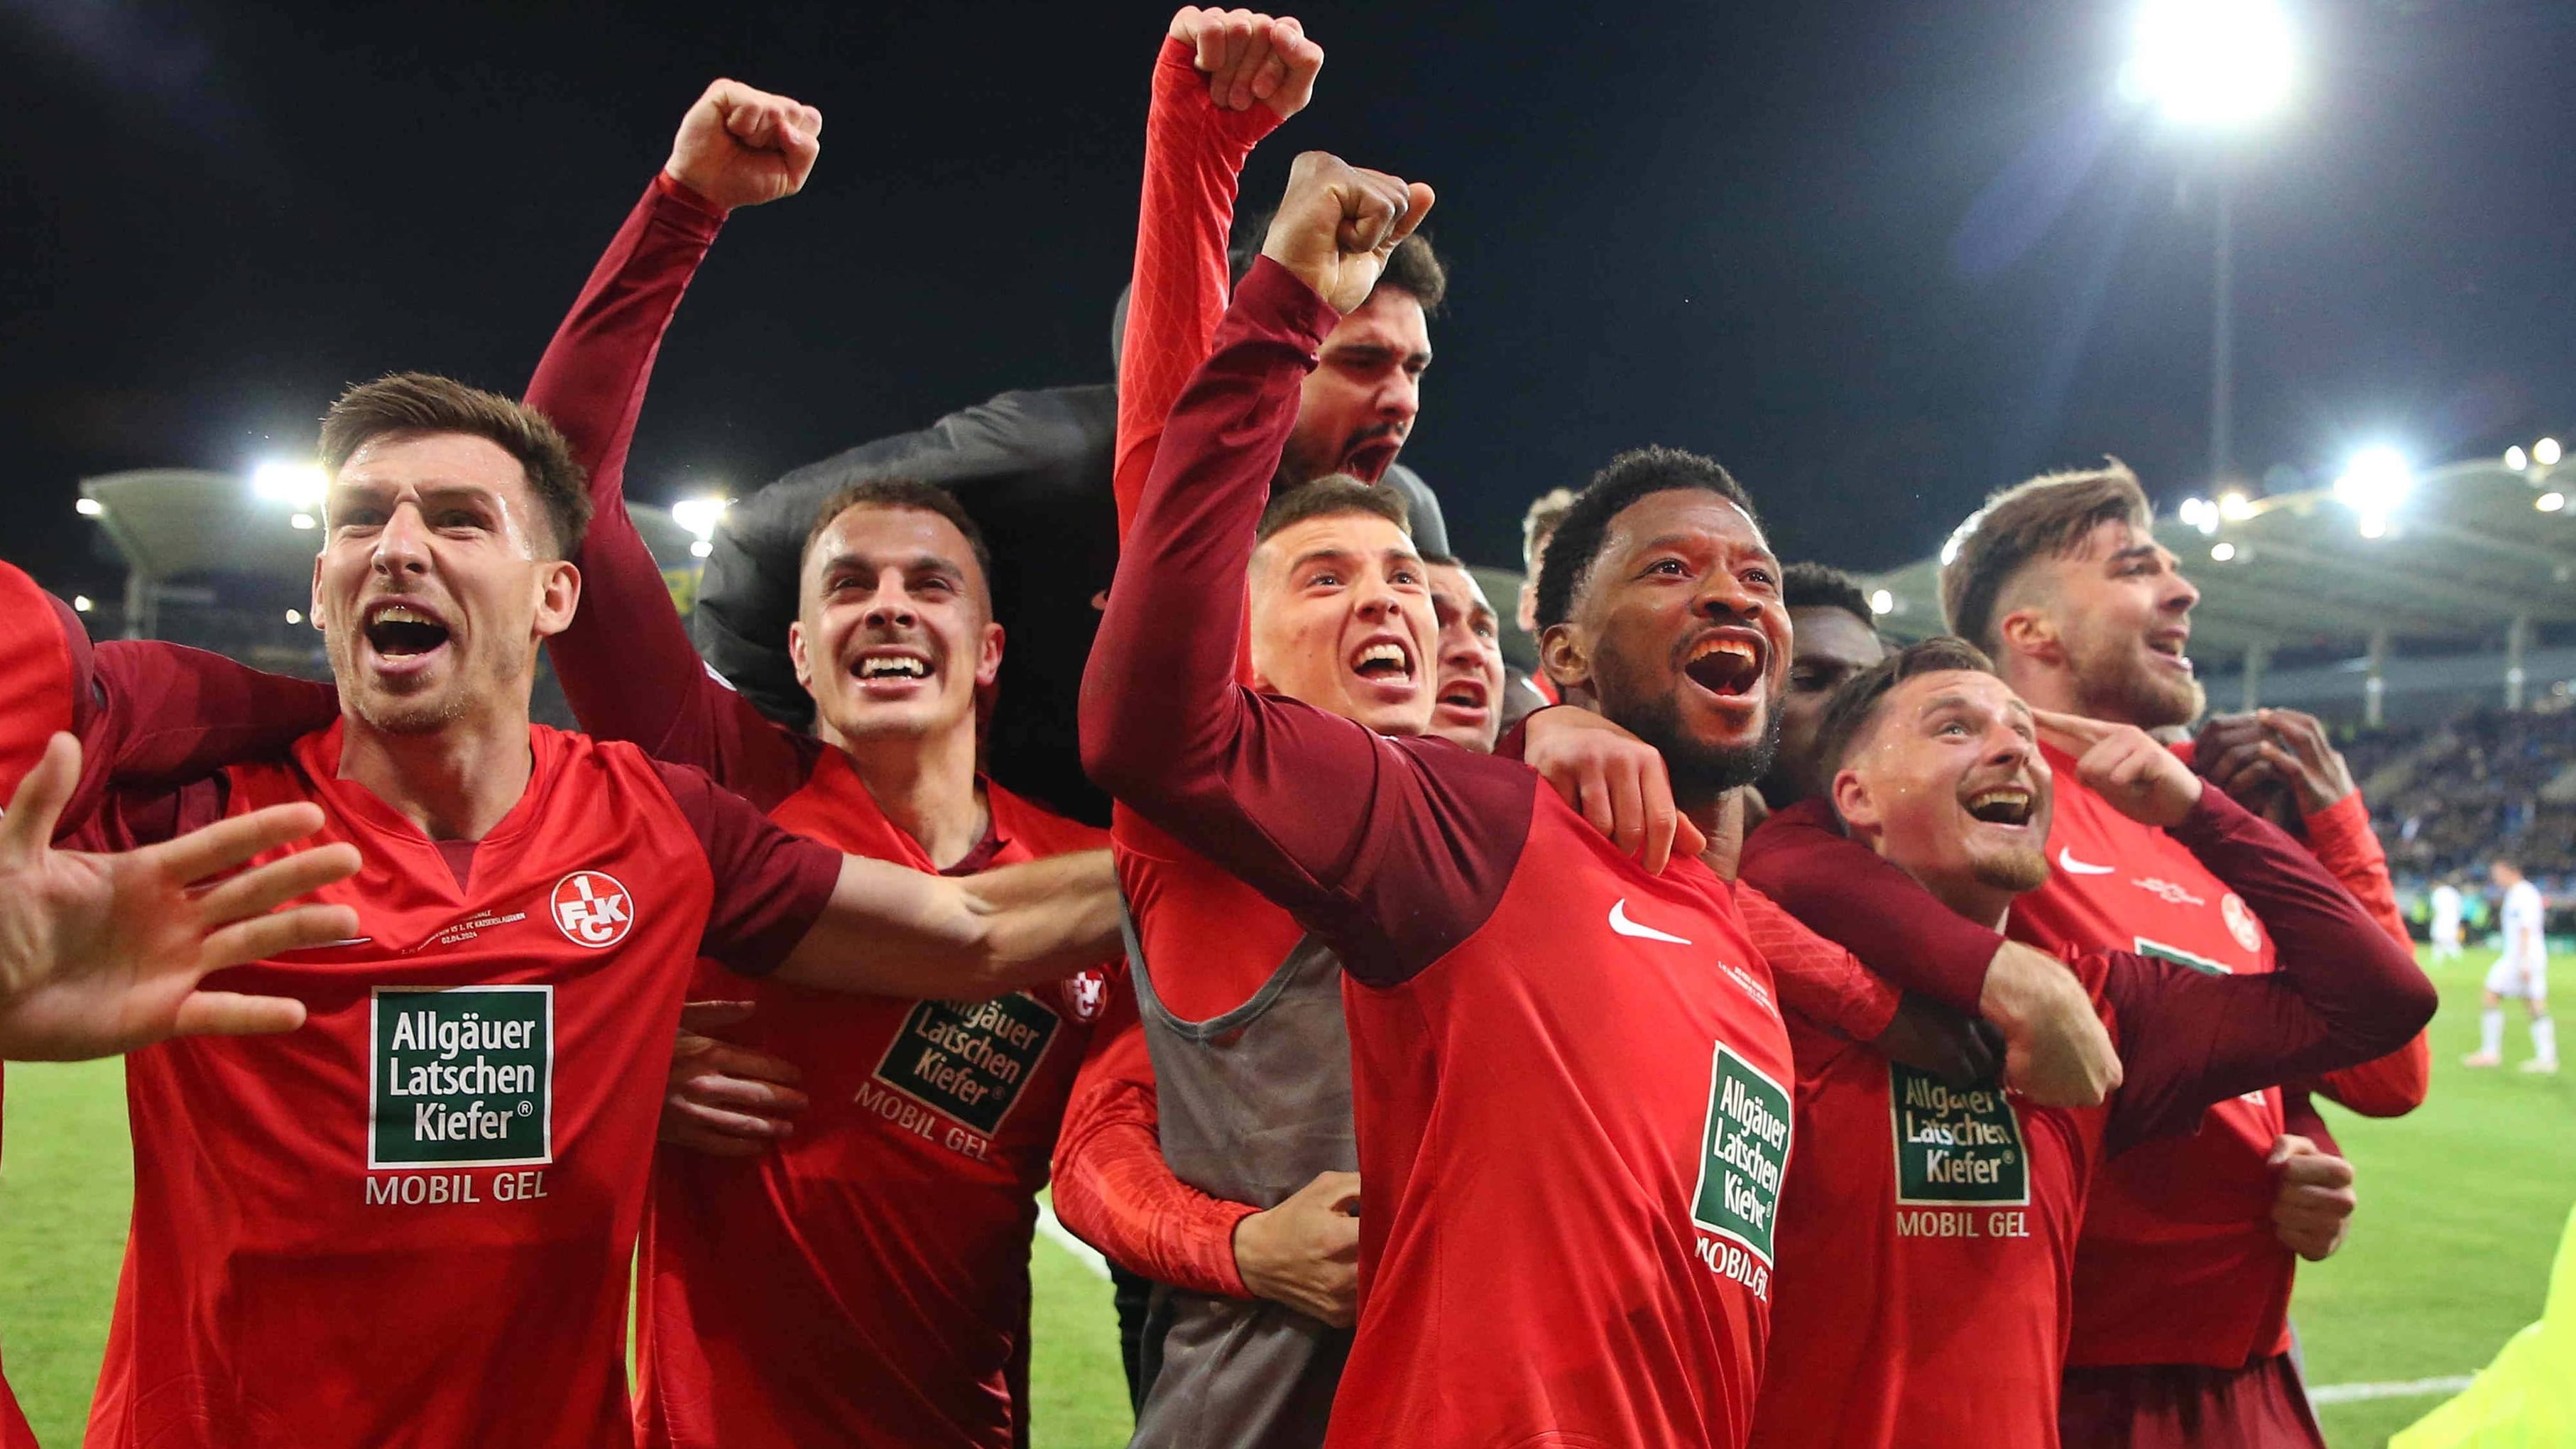 DFB-Pokal: Kaiserslautern erreicht Finale – Saarbrückens Traum geplatzt